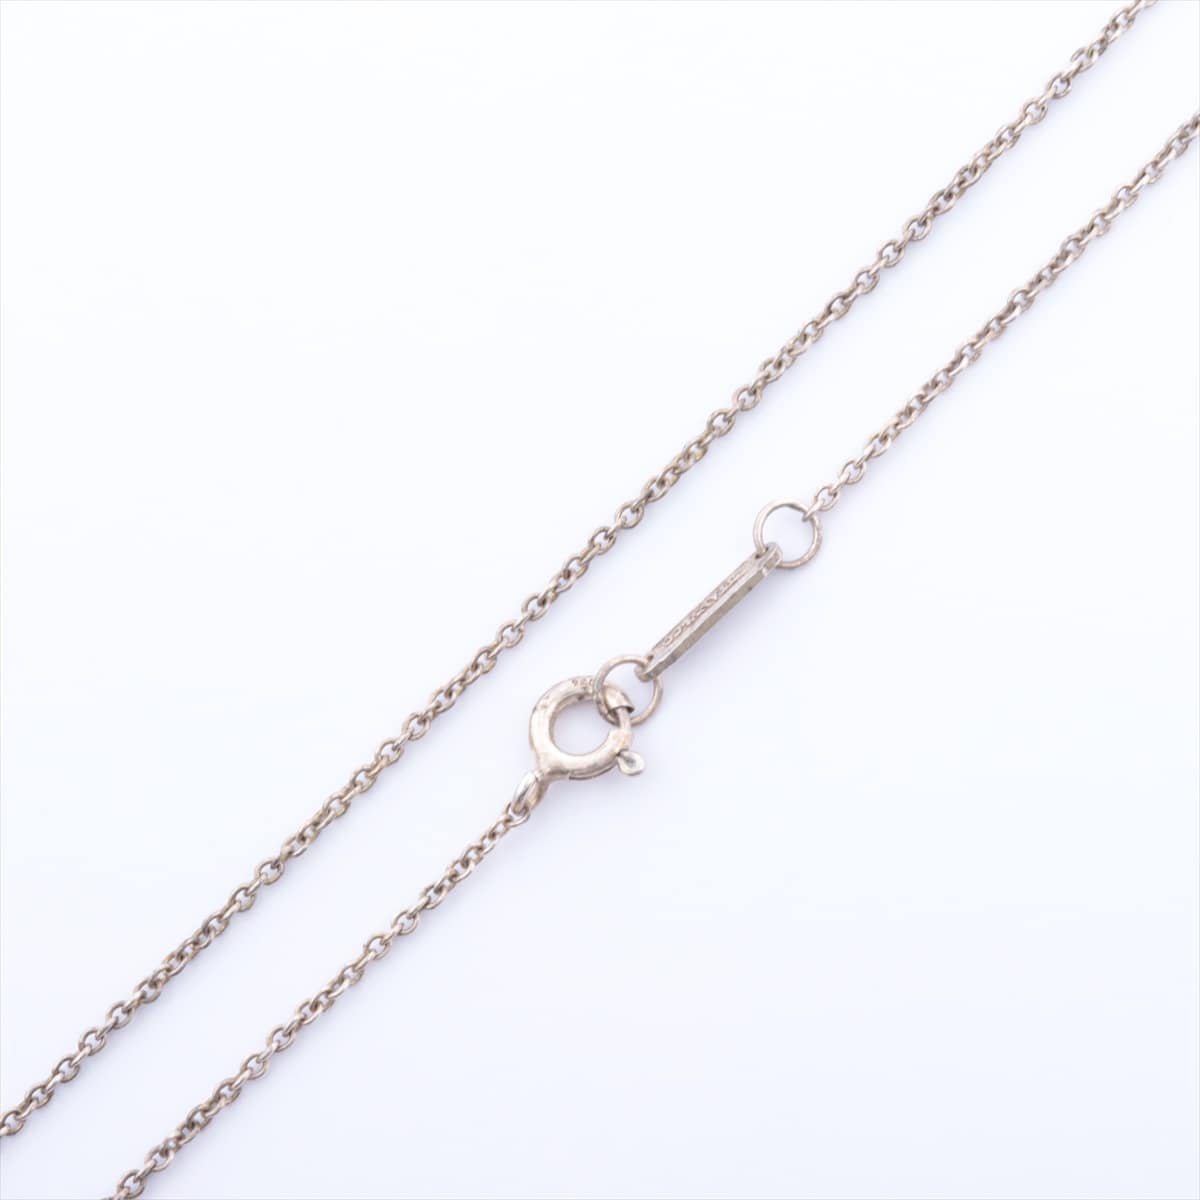 Tiffany Atlas Necklace 925 7.9g Silver